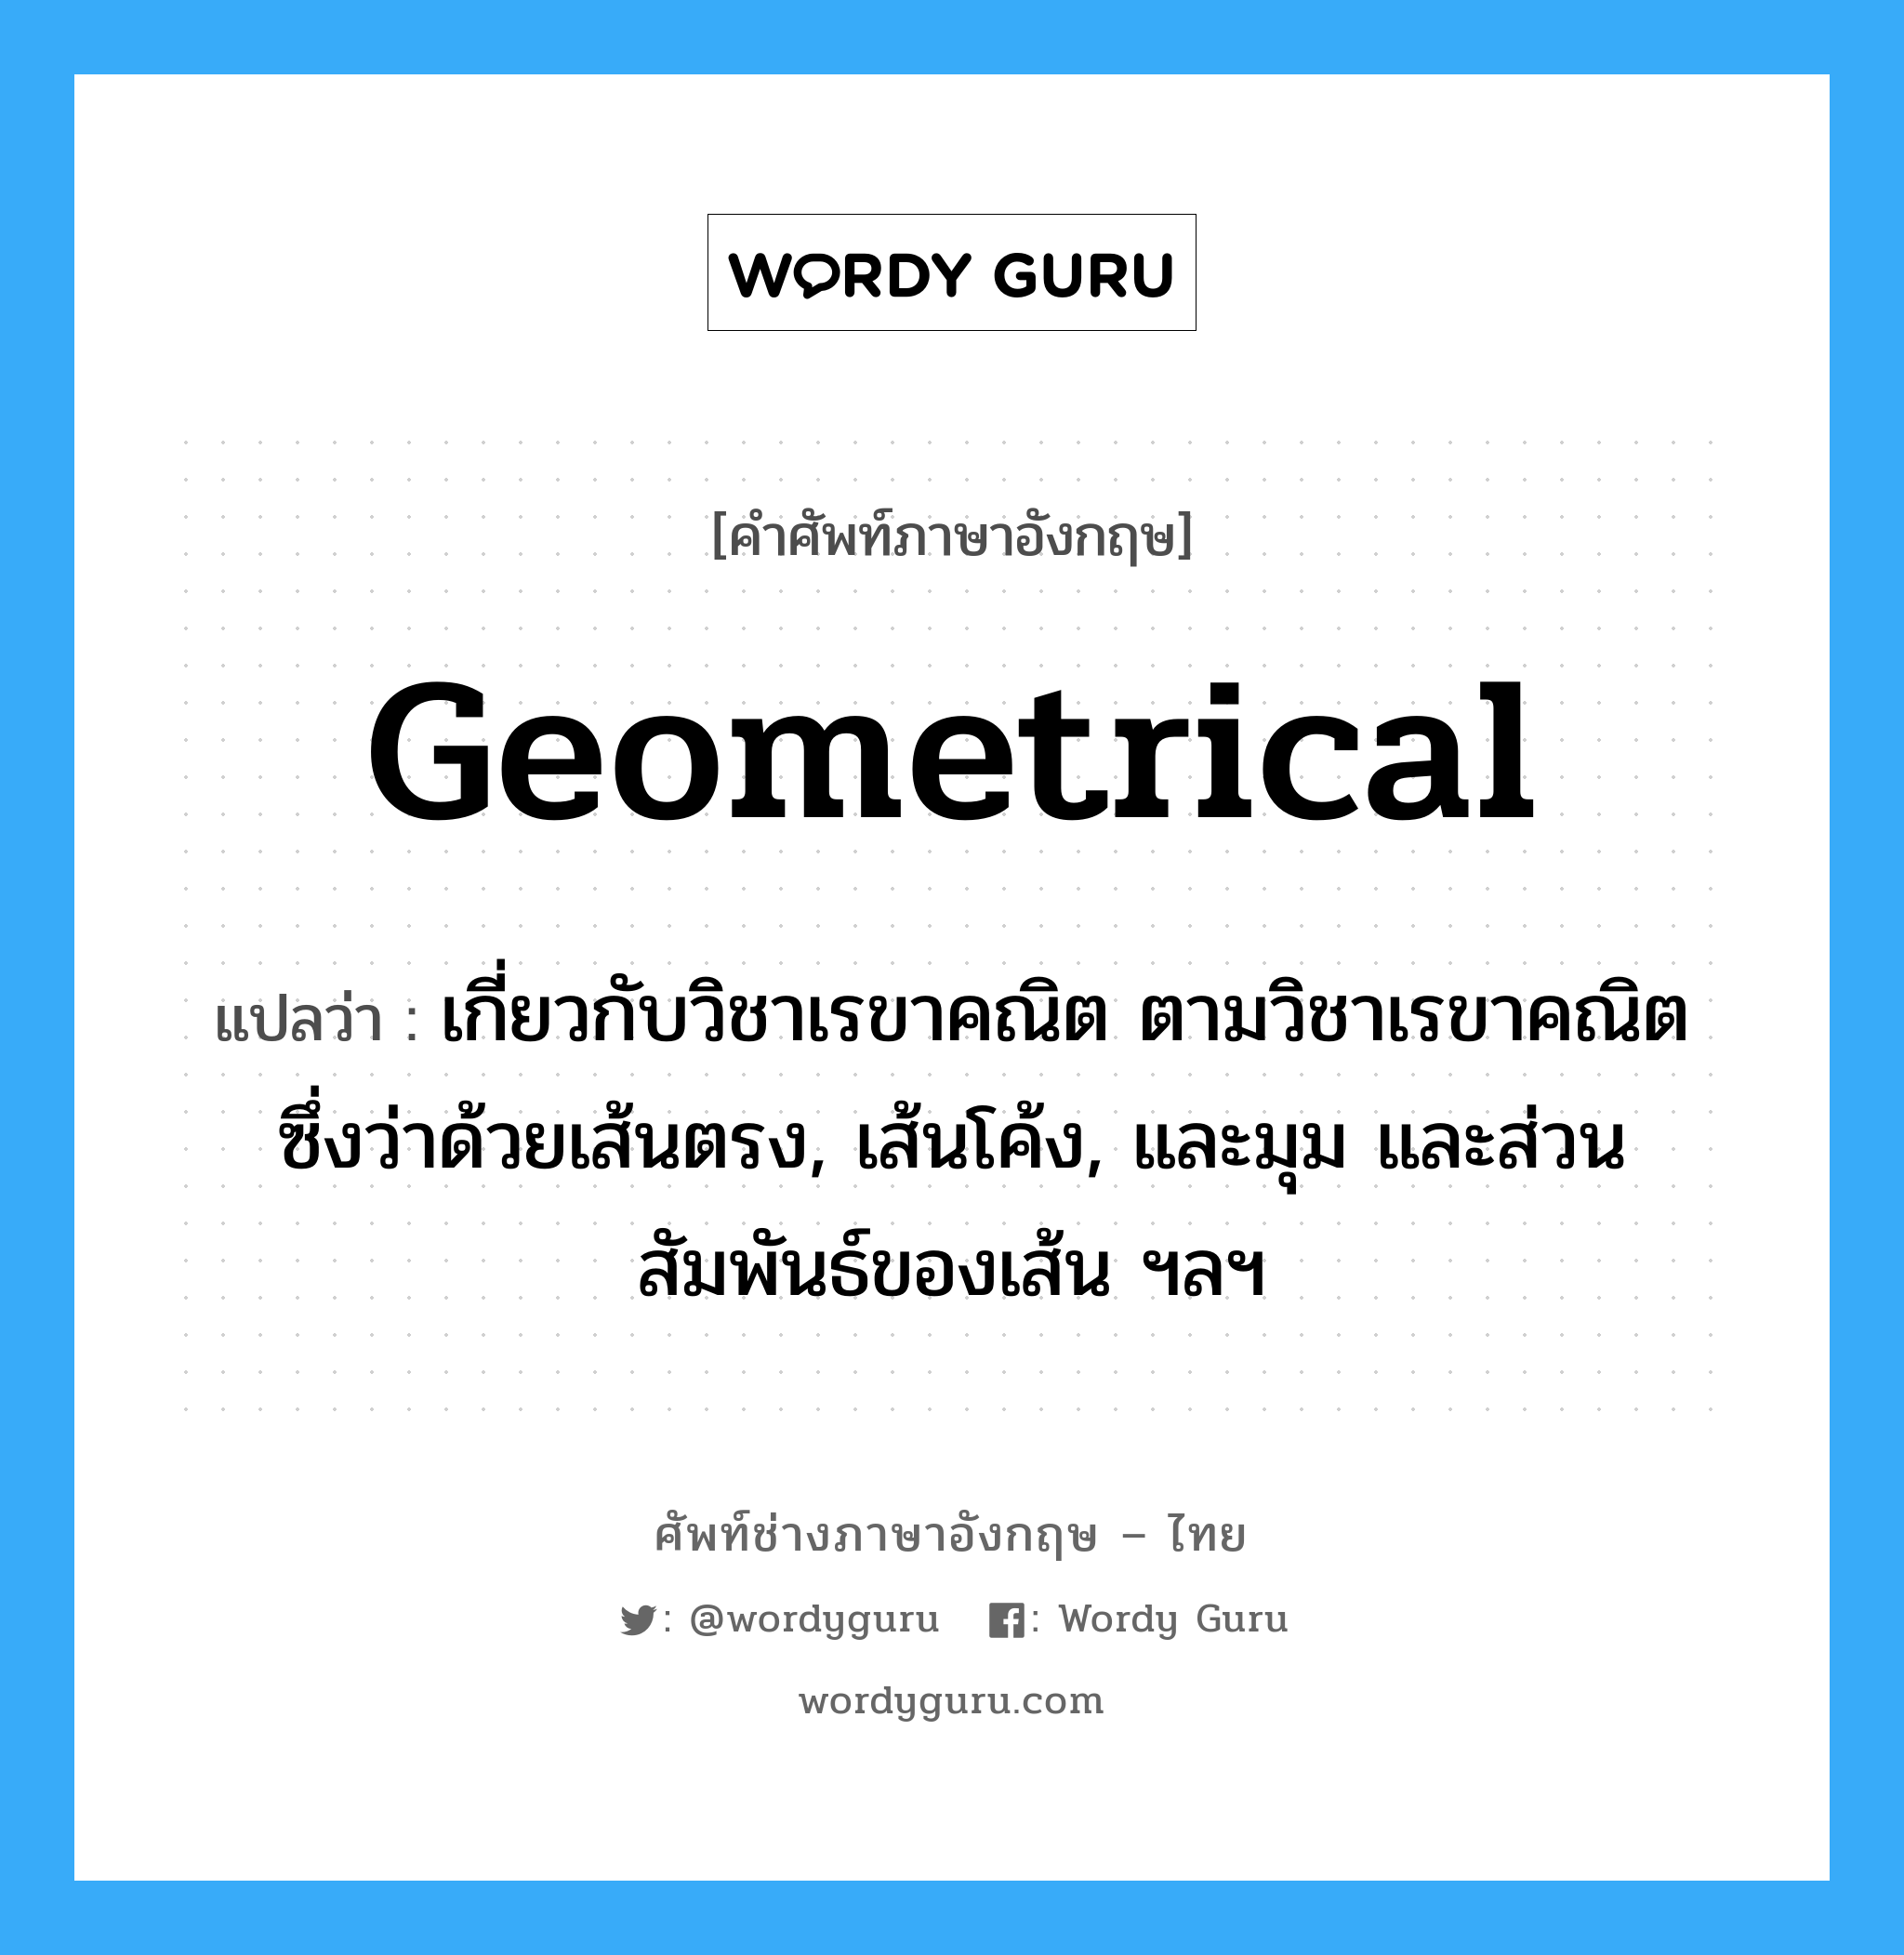 geometrical แปลว่า?, คำศัพท์ช่างภาษาอังกฤษ - ไทย geometrical คำศัพท์ภาษาอังกฤษ geometrical แปลว่า เกี่ยวกับวิชาเรขาคณิต ตามวิชาเรขาคณิต ซึ่งว่าด้วยเส้นตรง, เส้นโค้ง, และมุม และส่วนสัมพันธ์ของเส้น ฯลฯ